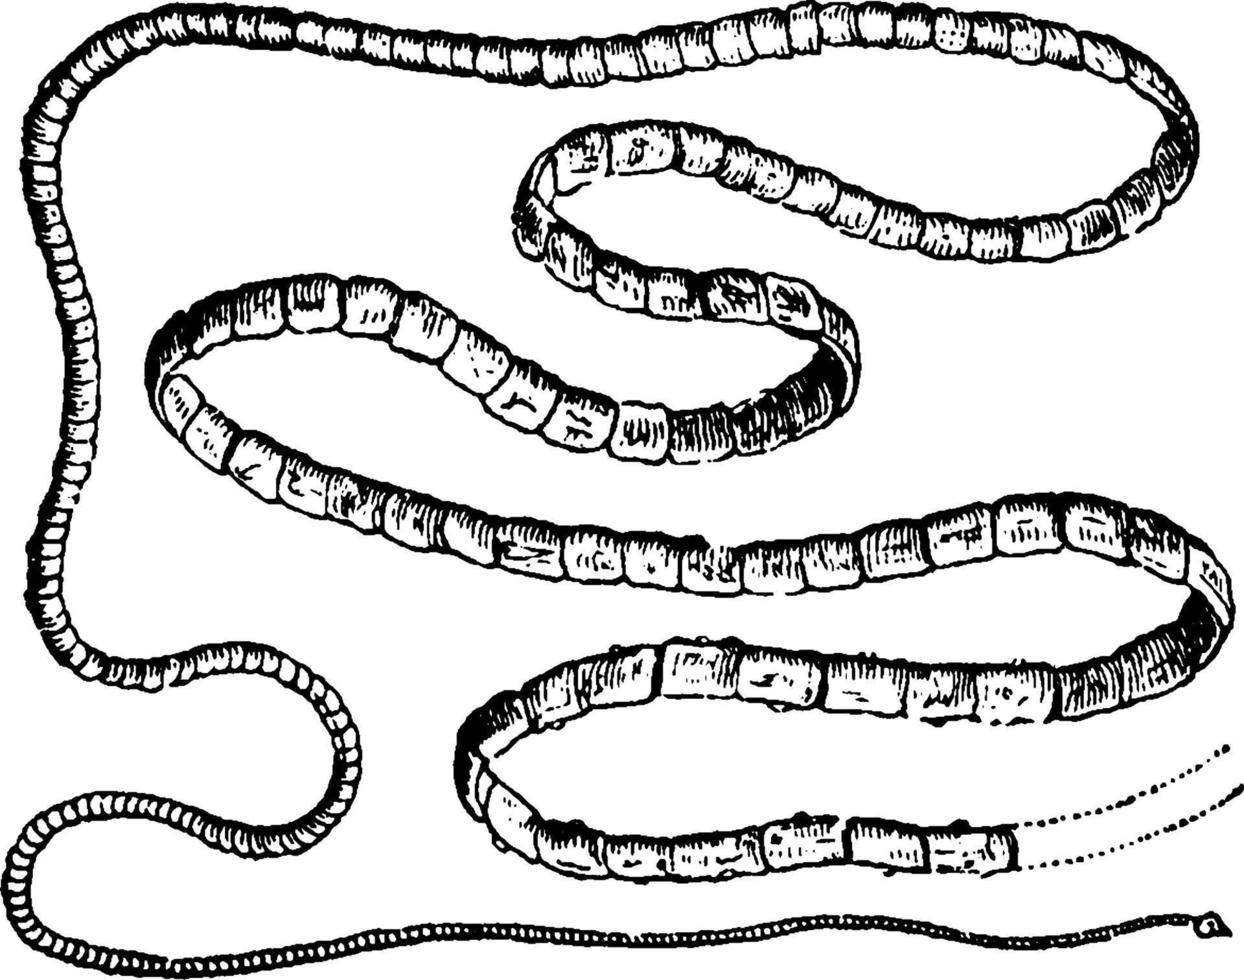 Tapeworm, vintage illustration. vector